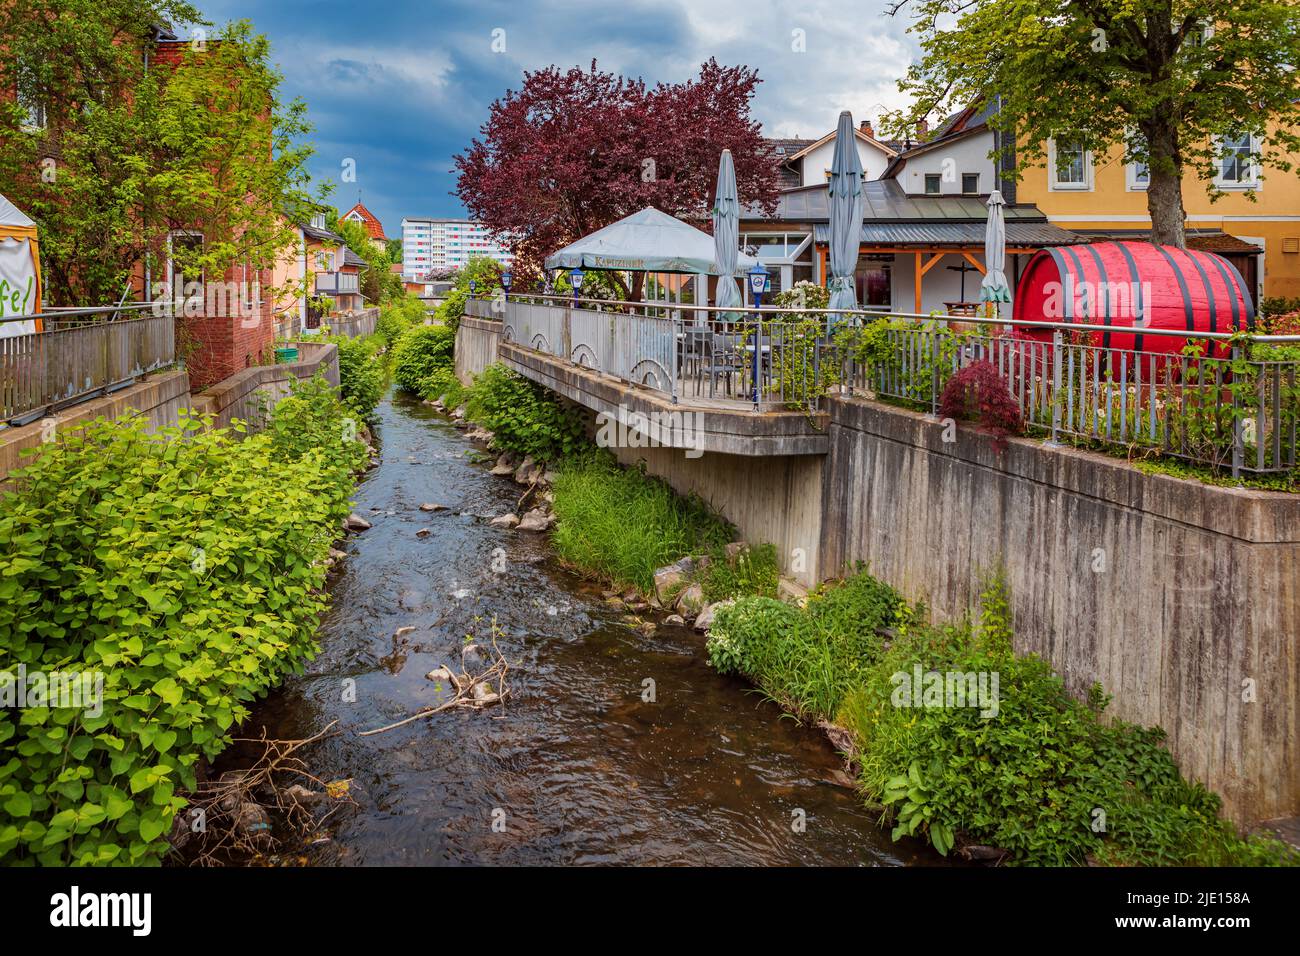 NEUSTADT BEI COBURG, BAVIERA, ALEMANIA - HACIA MAYO de 2022: El paisaje urbano de la ciudad de Neustadt bei Coburg, Alemania. Foto de stock